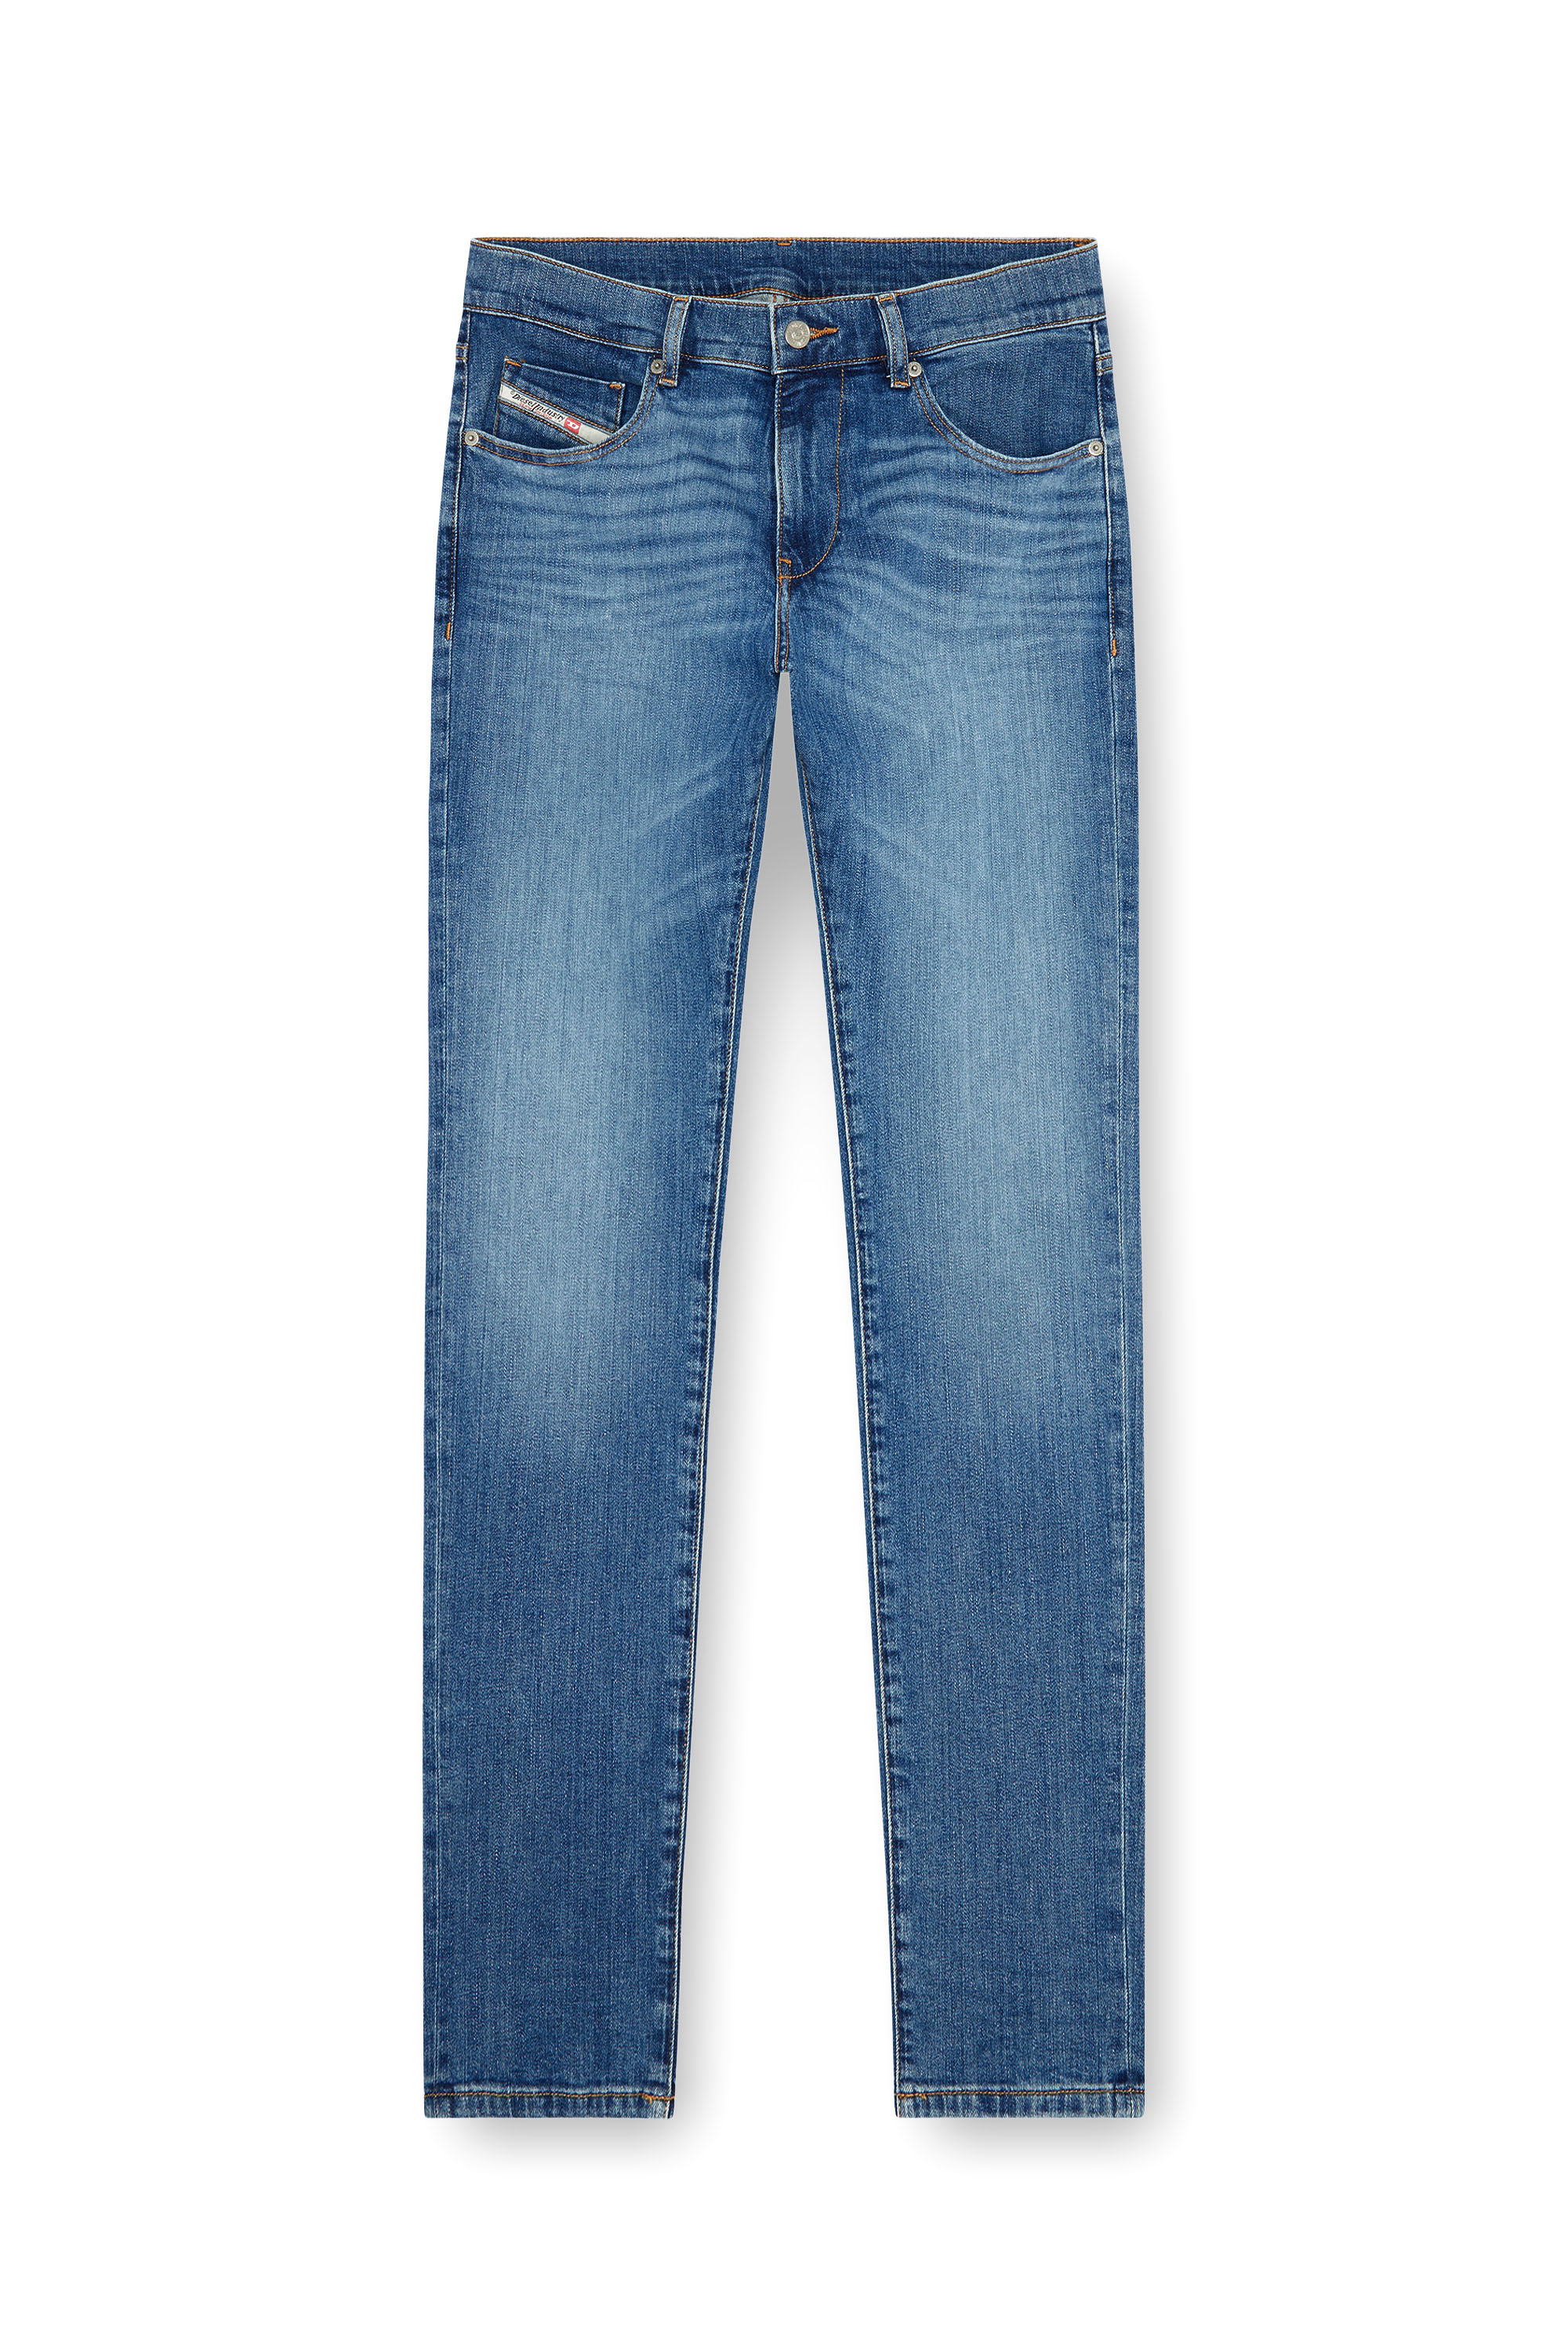 Diesel - Slim Jeans 2019 D-Strukt 0KIAL, Hombre Slim Jeans - 2019 D-Strukt in Azul marino - Image 2